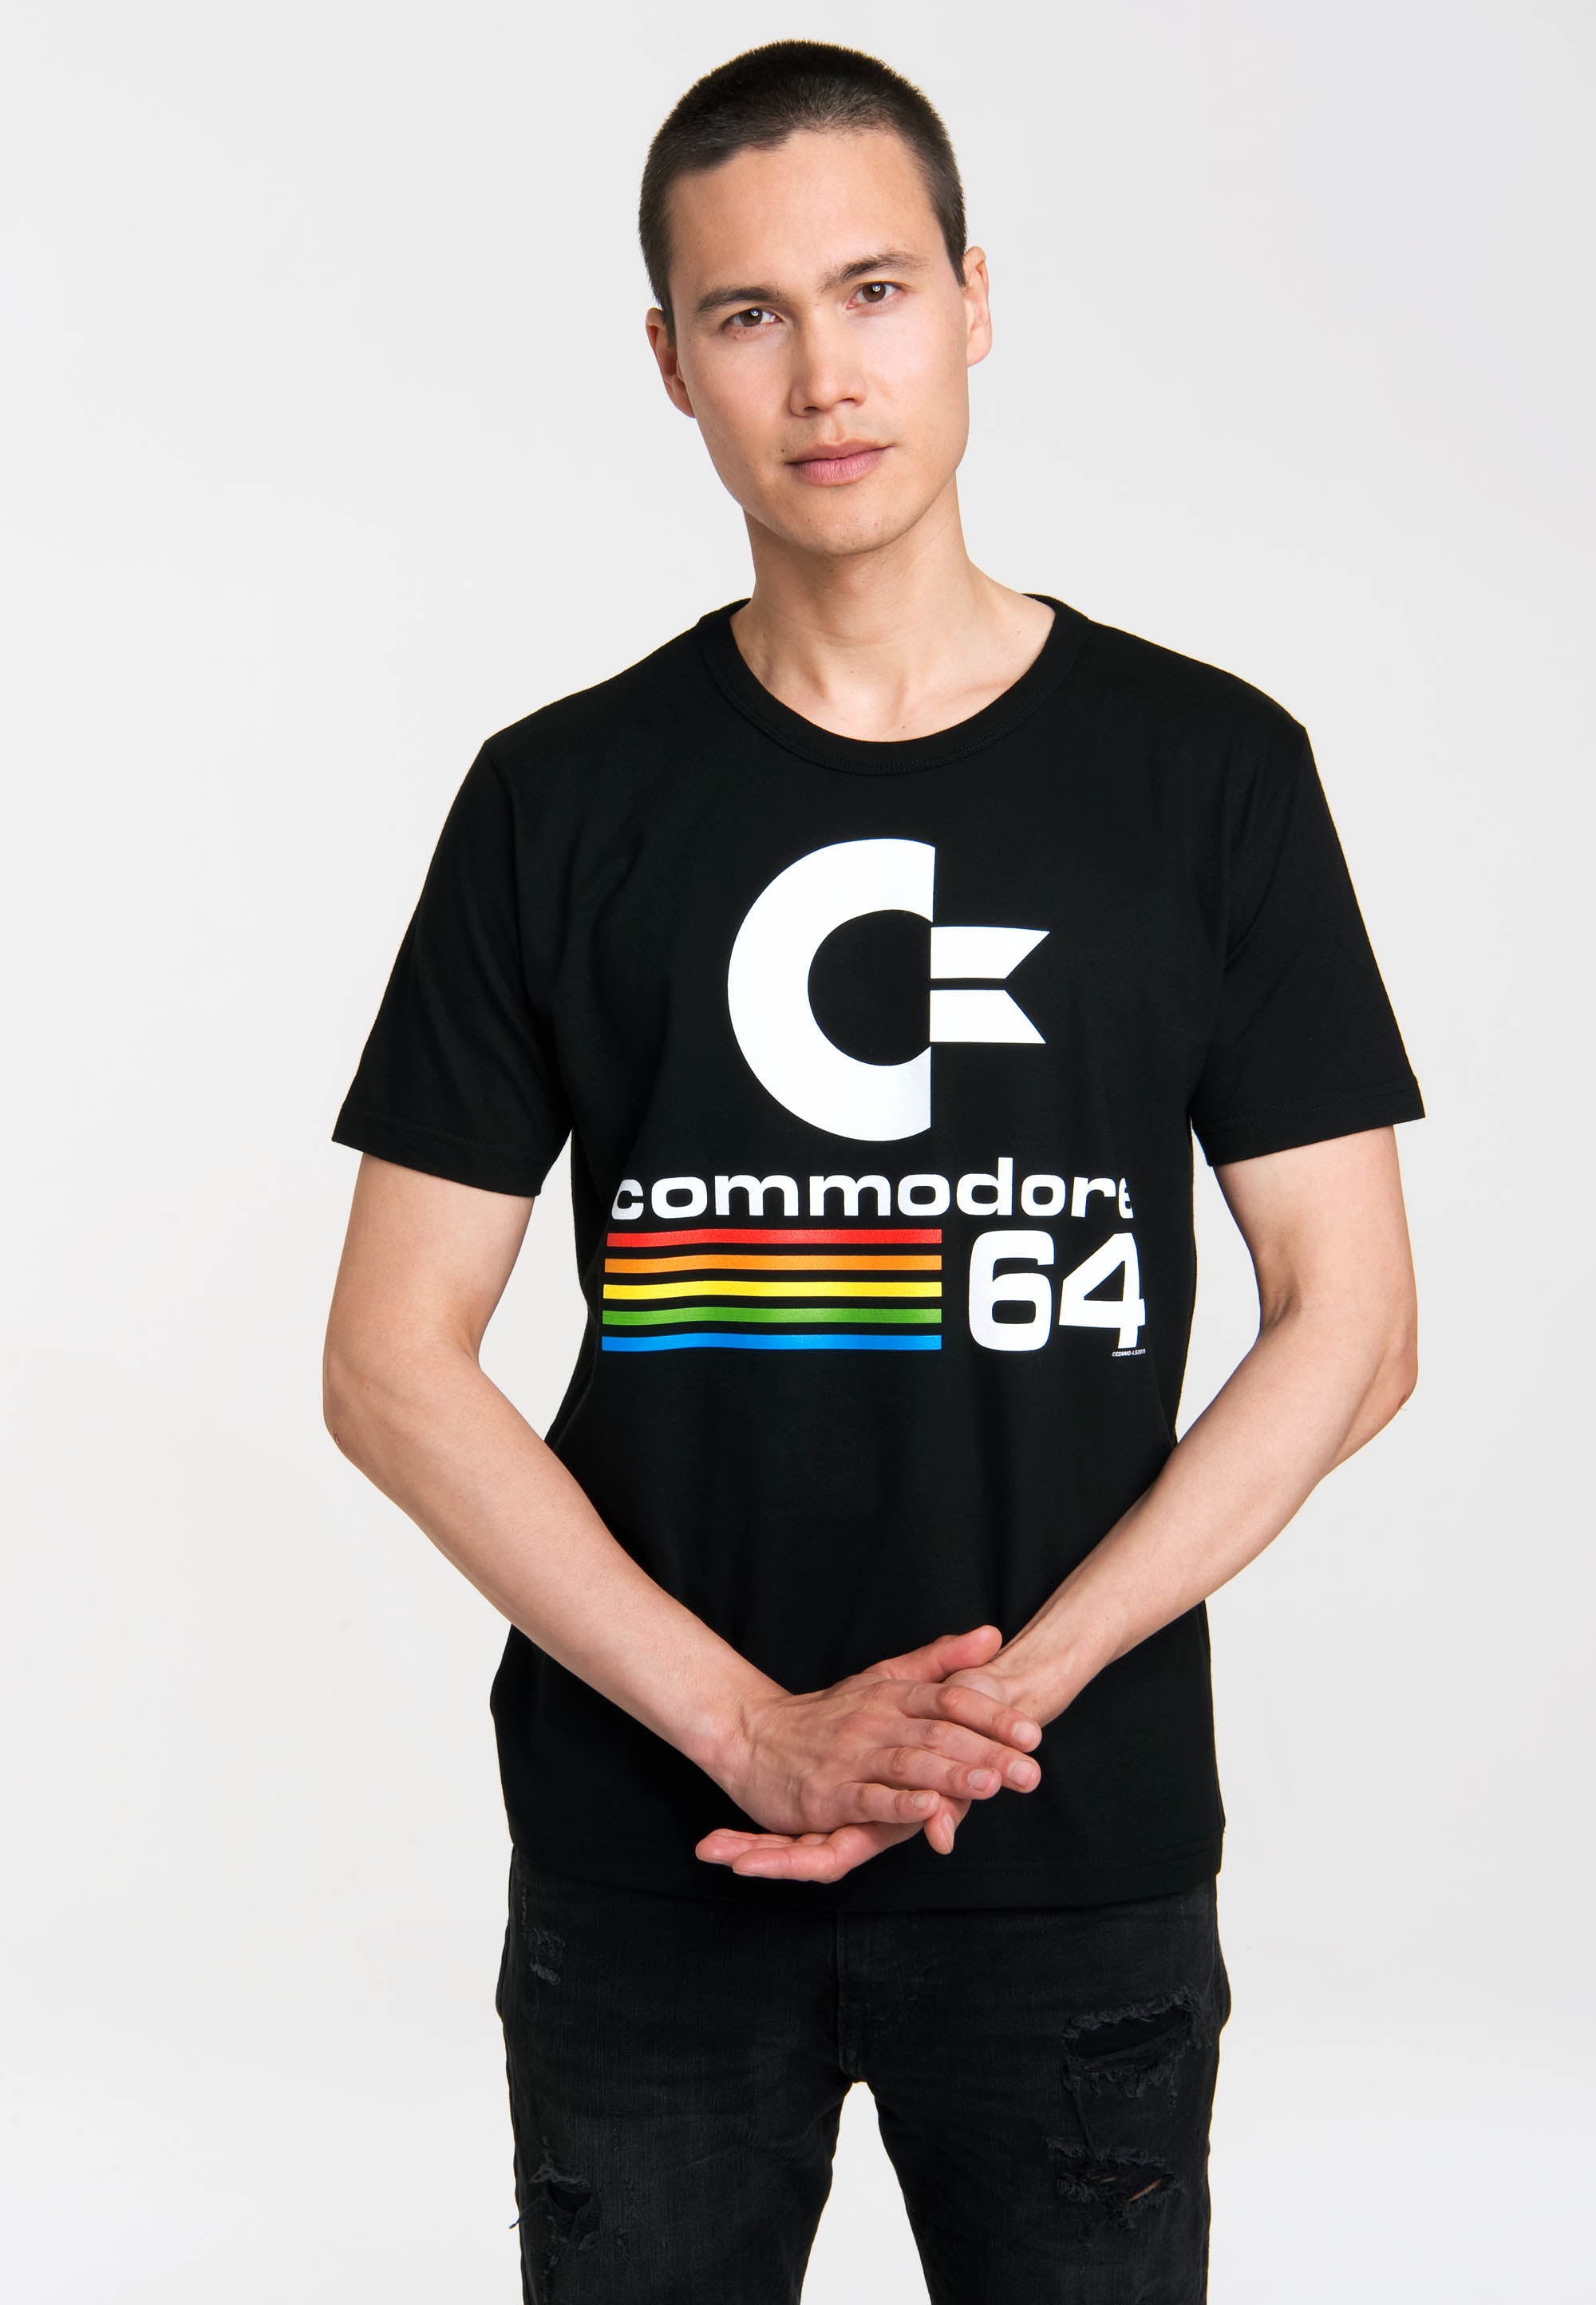 Logoshirt Herren T-Shirt Commodore - C64 - Nerd Rundhals Shirt, schwarz - Lizenziertes Originaldesign, Größe L